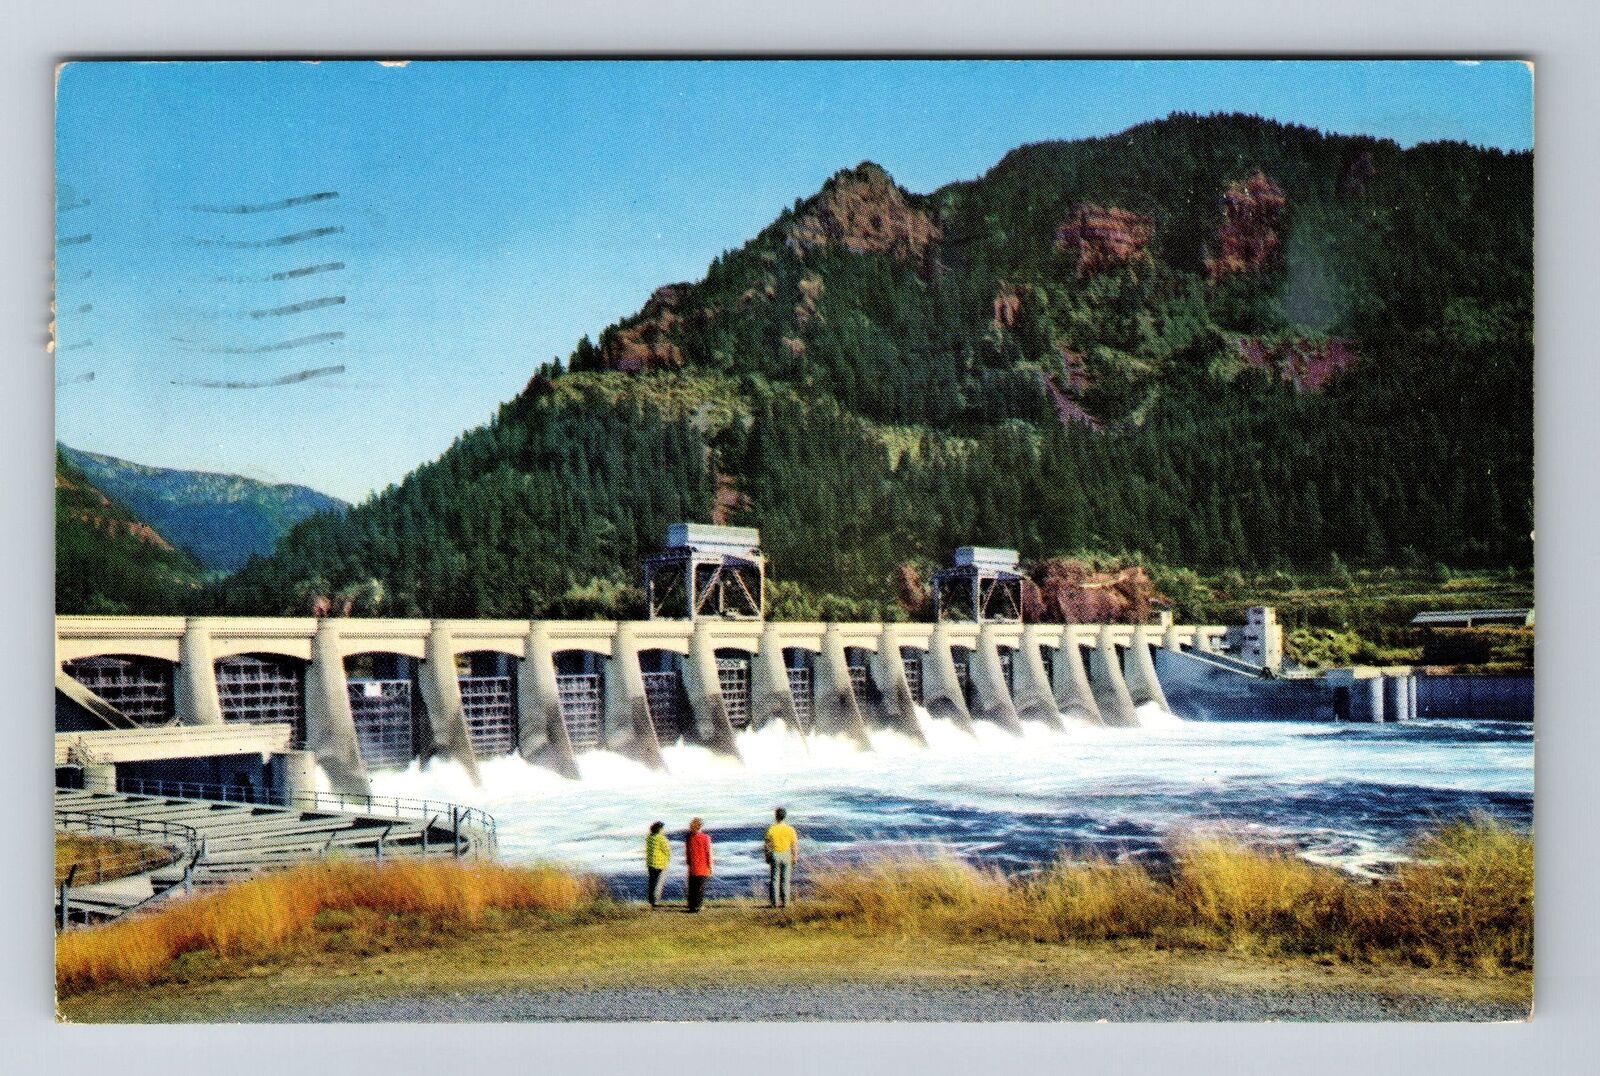 OR-Oregon, Bonneville Dam, Scenic View Area, Vintage Postcard